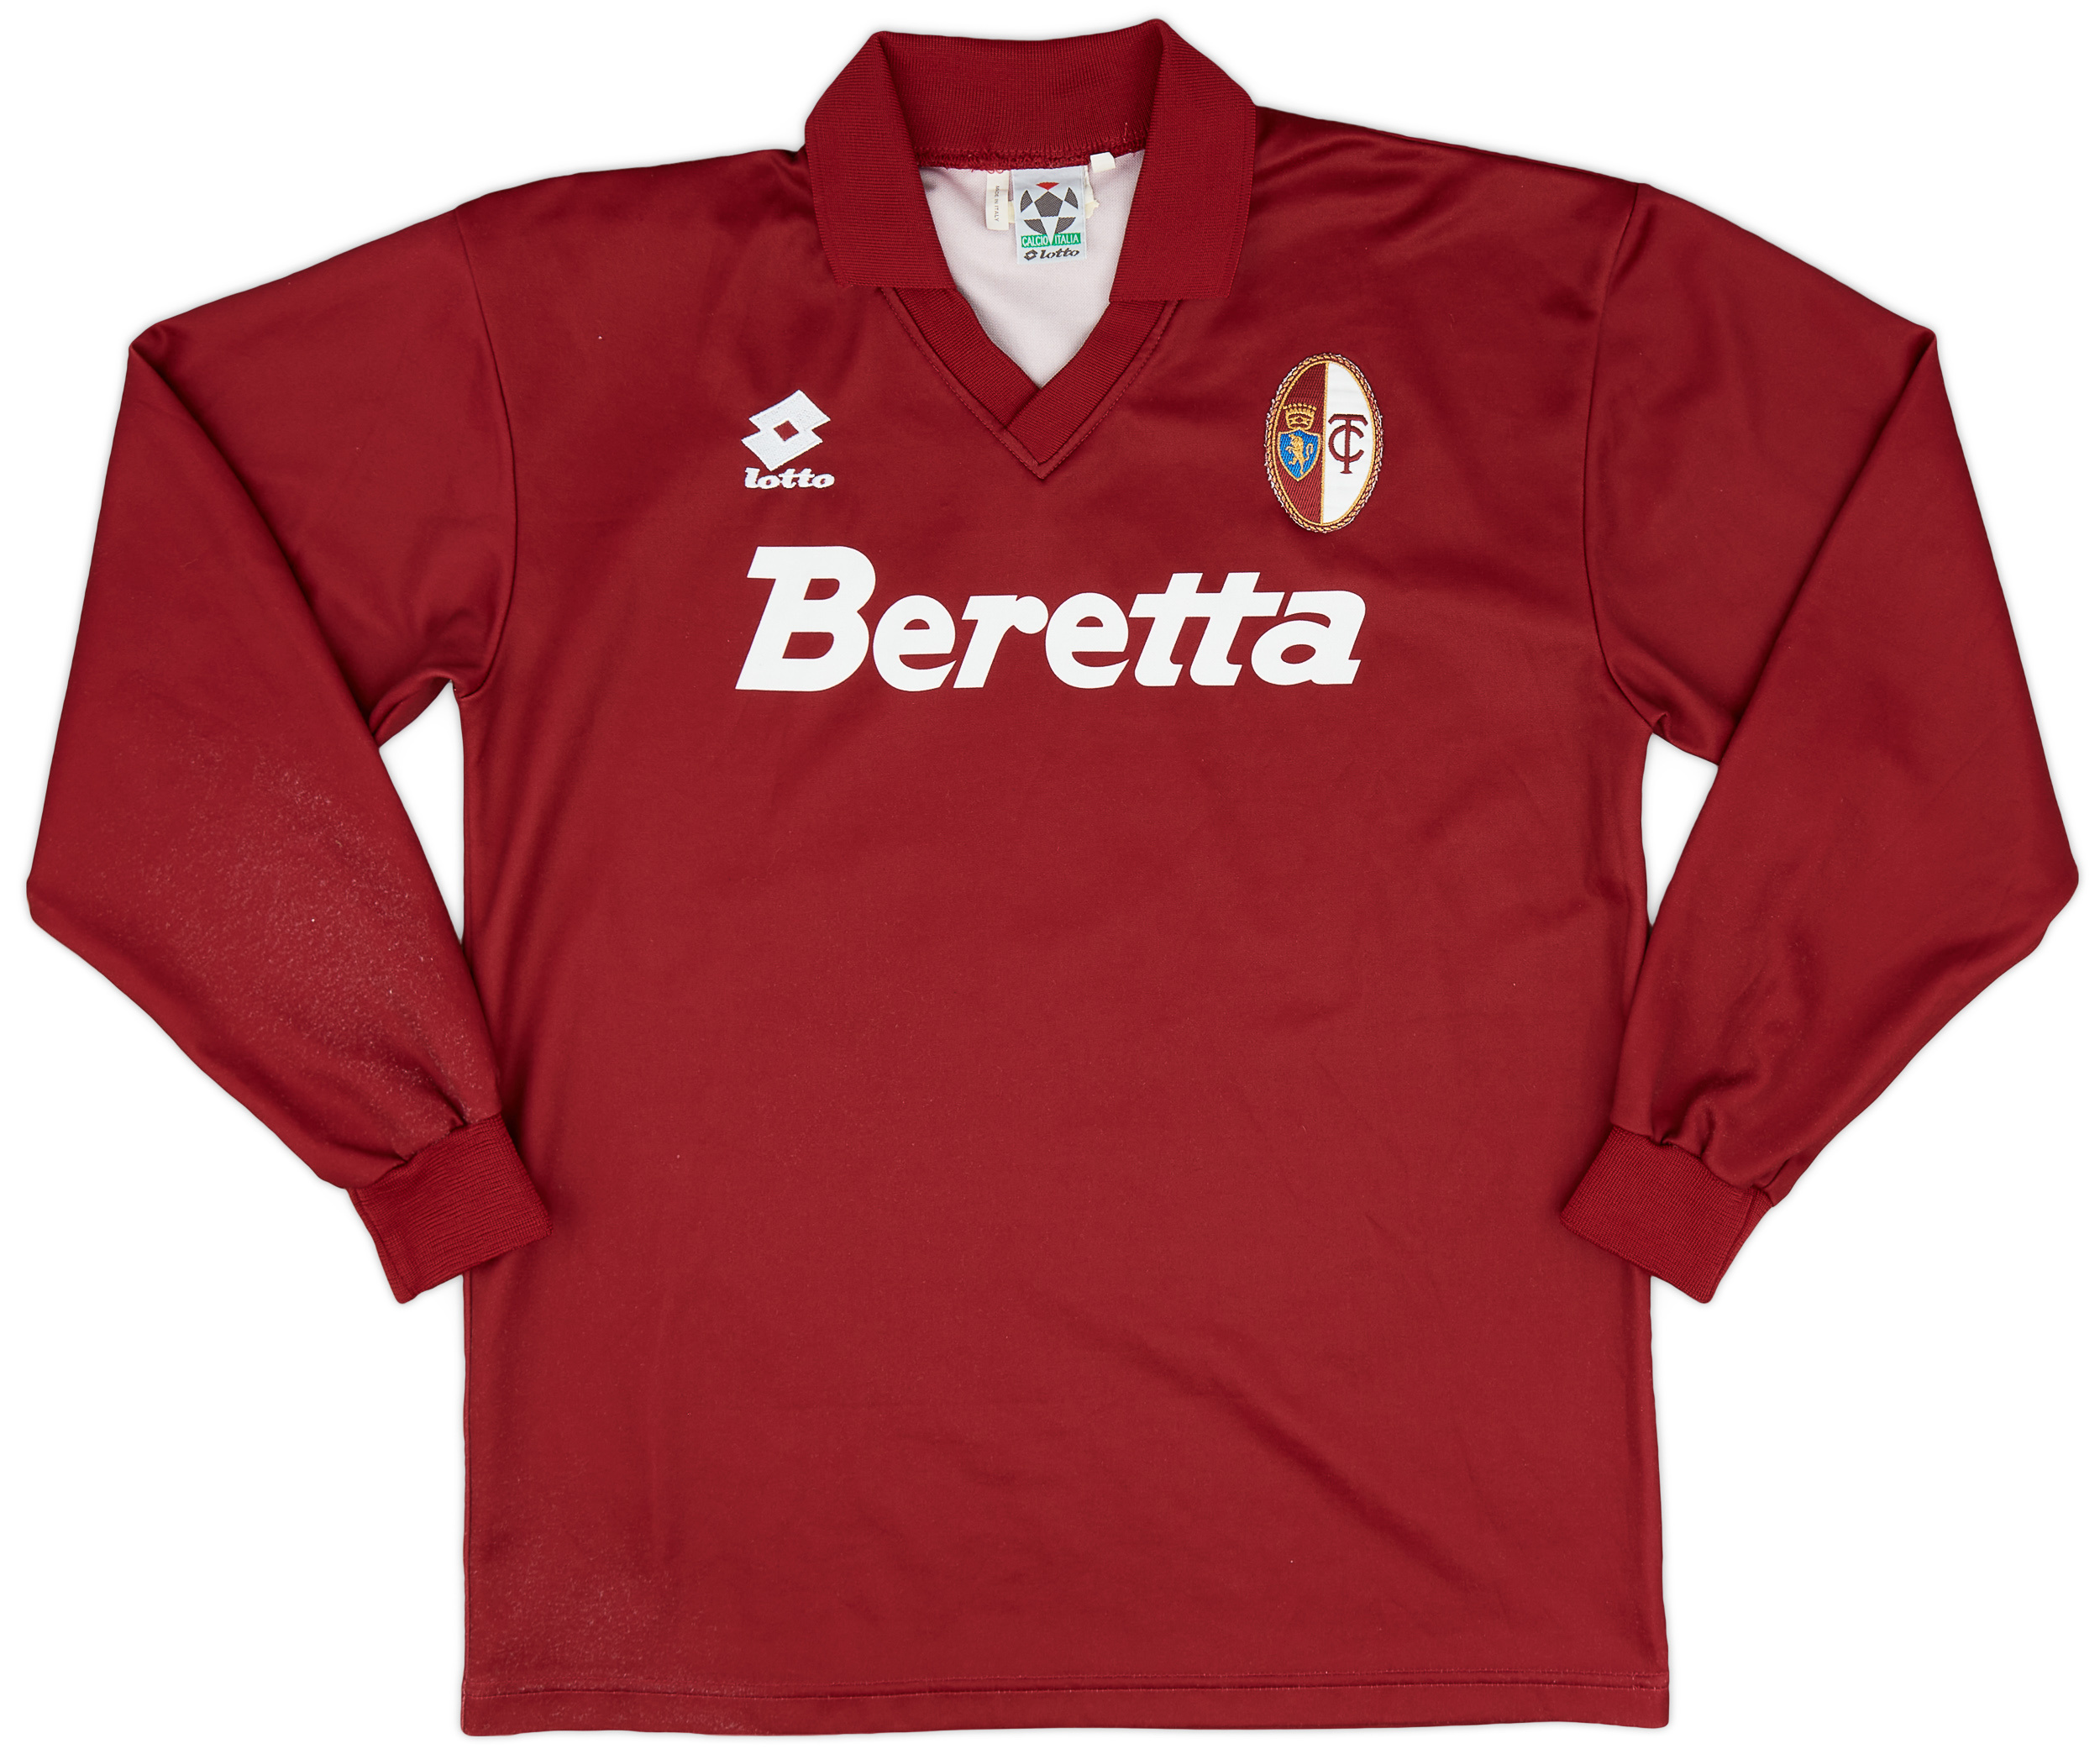 Retro Torino Shirt